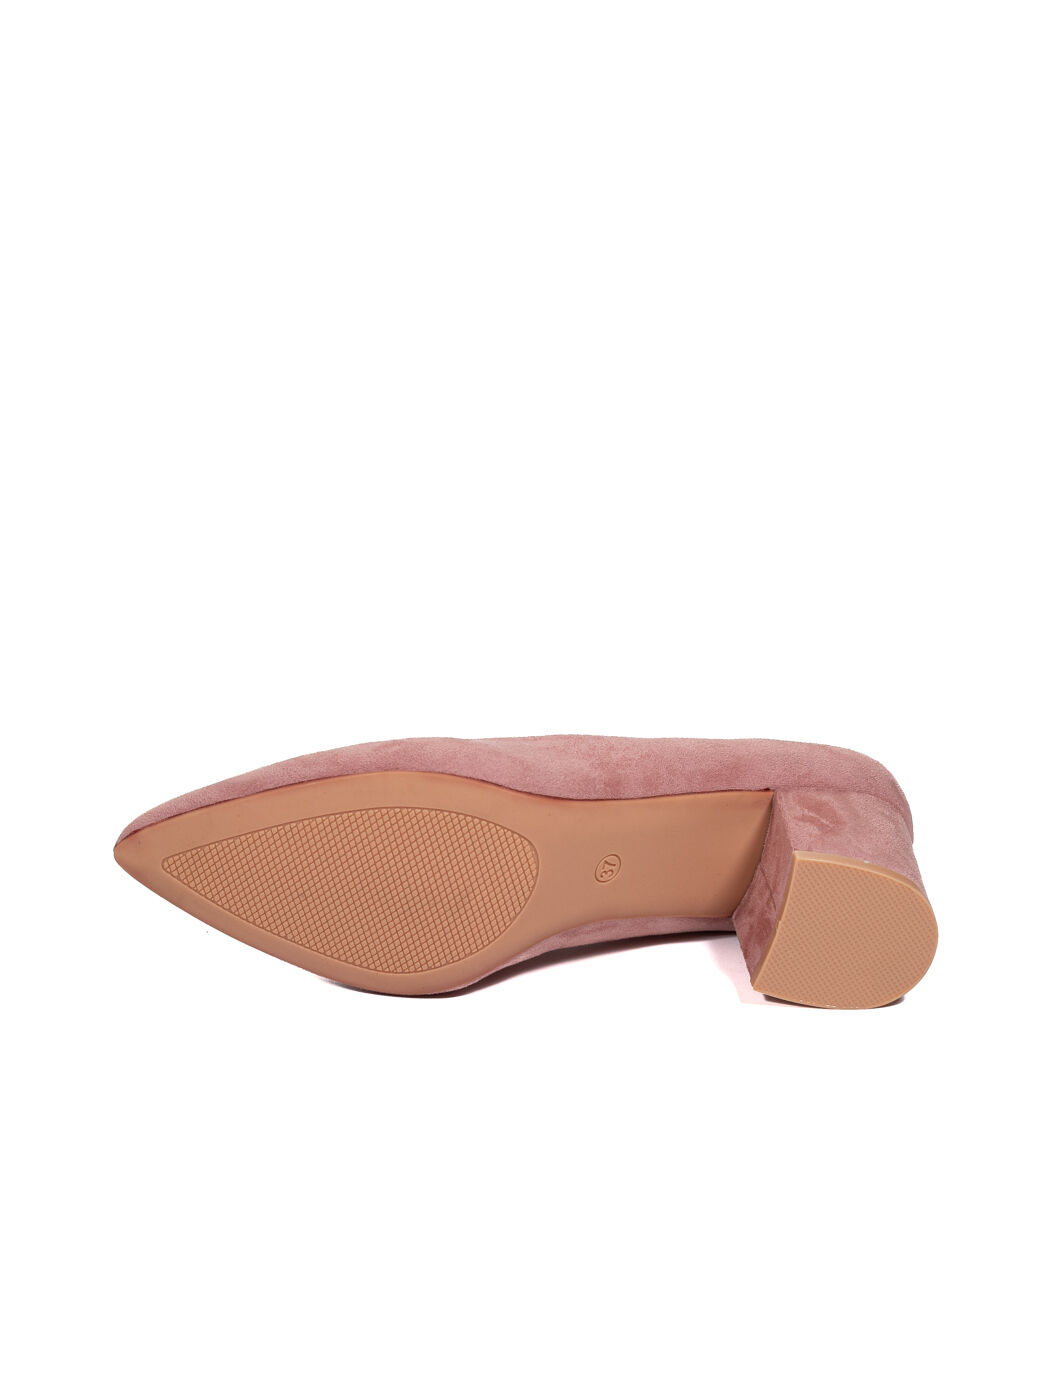 Туфли женские розовые экозамша каблук устойчивый демисезон от производителя CM вид 2